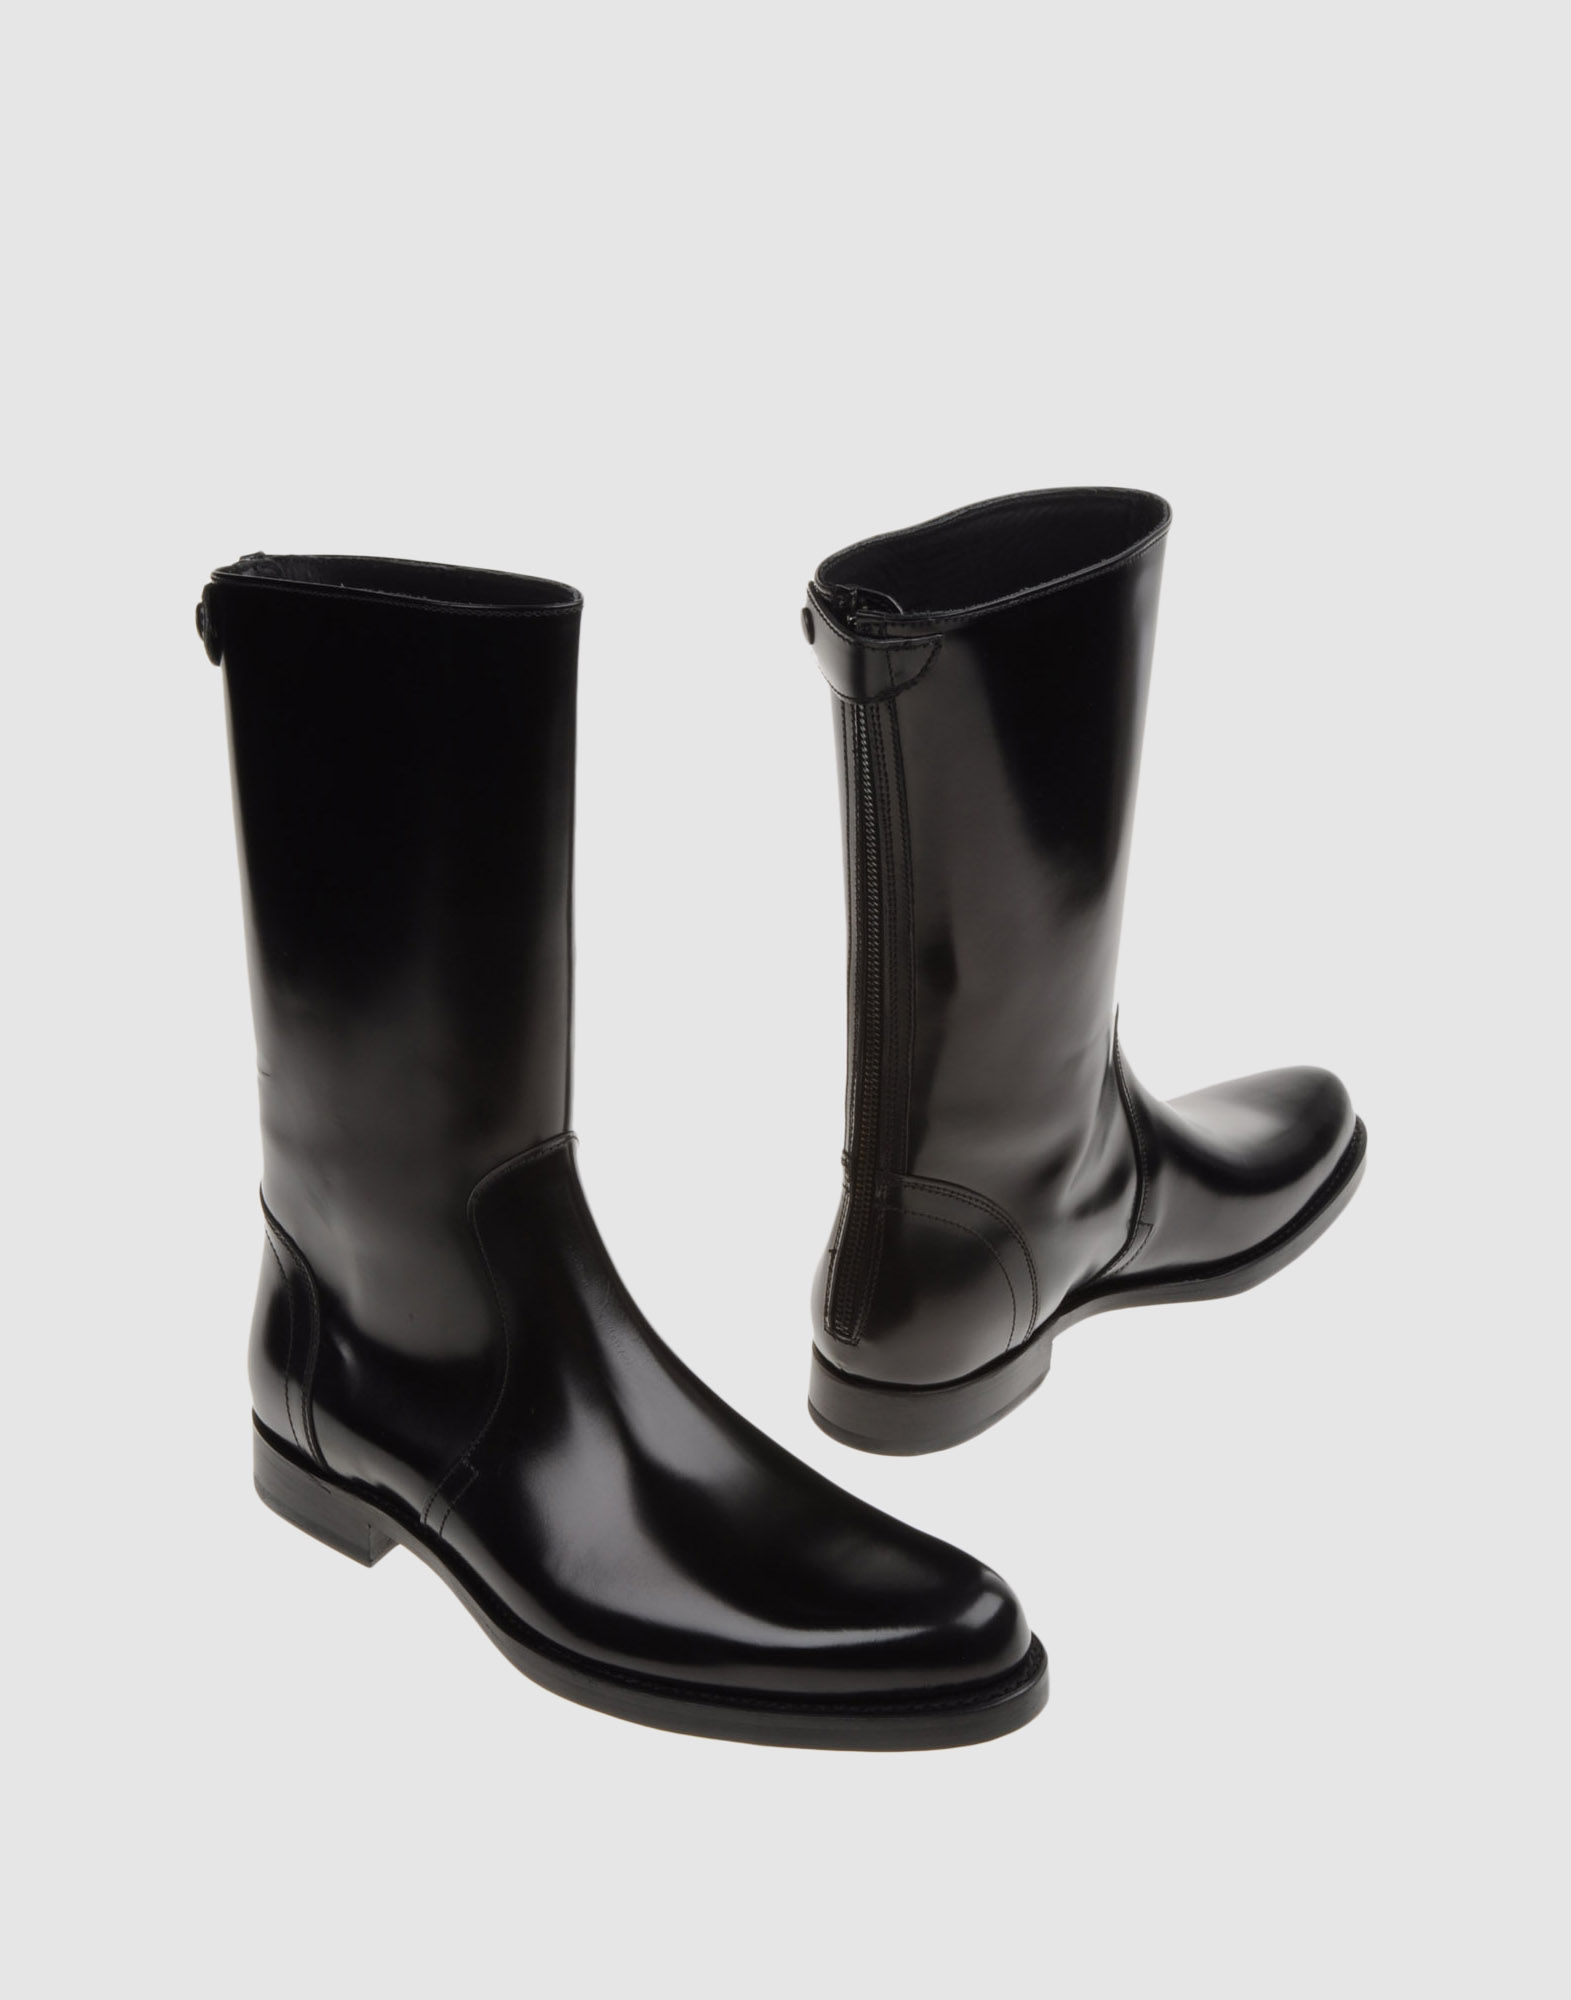 Jil Sander Boots in Black for Men - Lyst